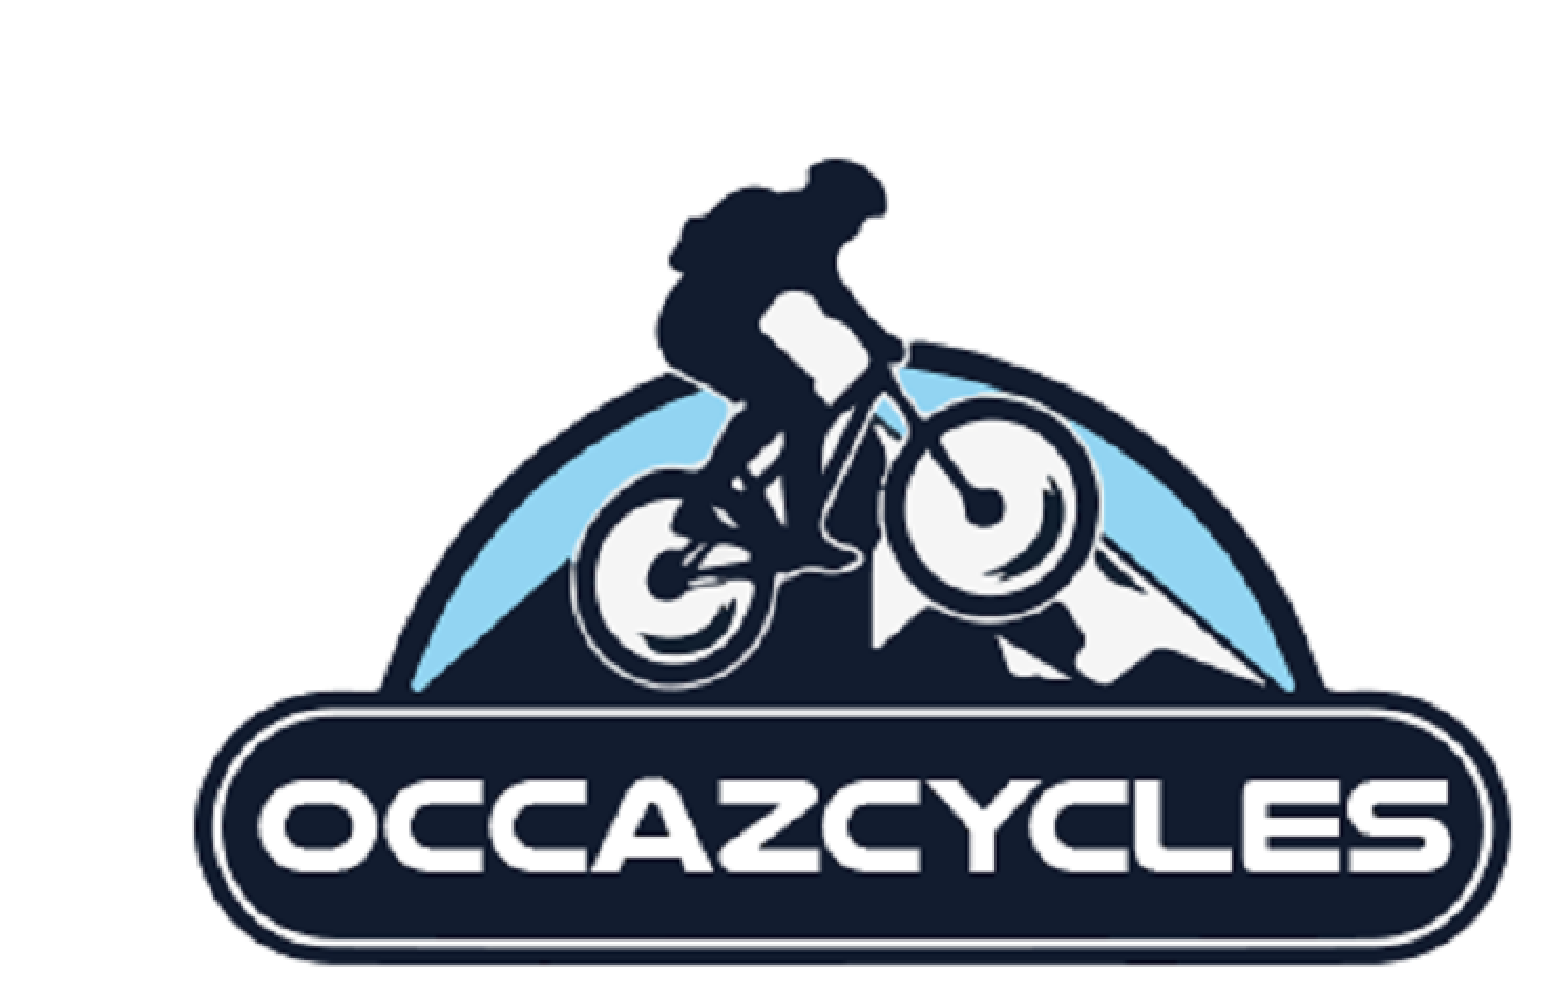 OCCAZCYCLES